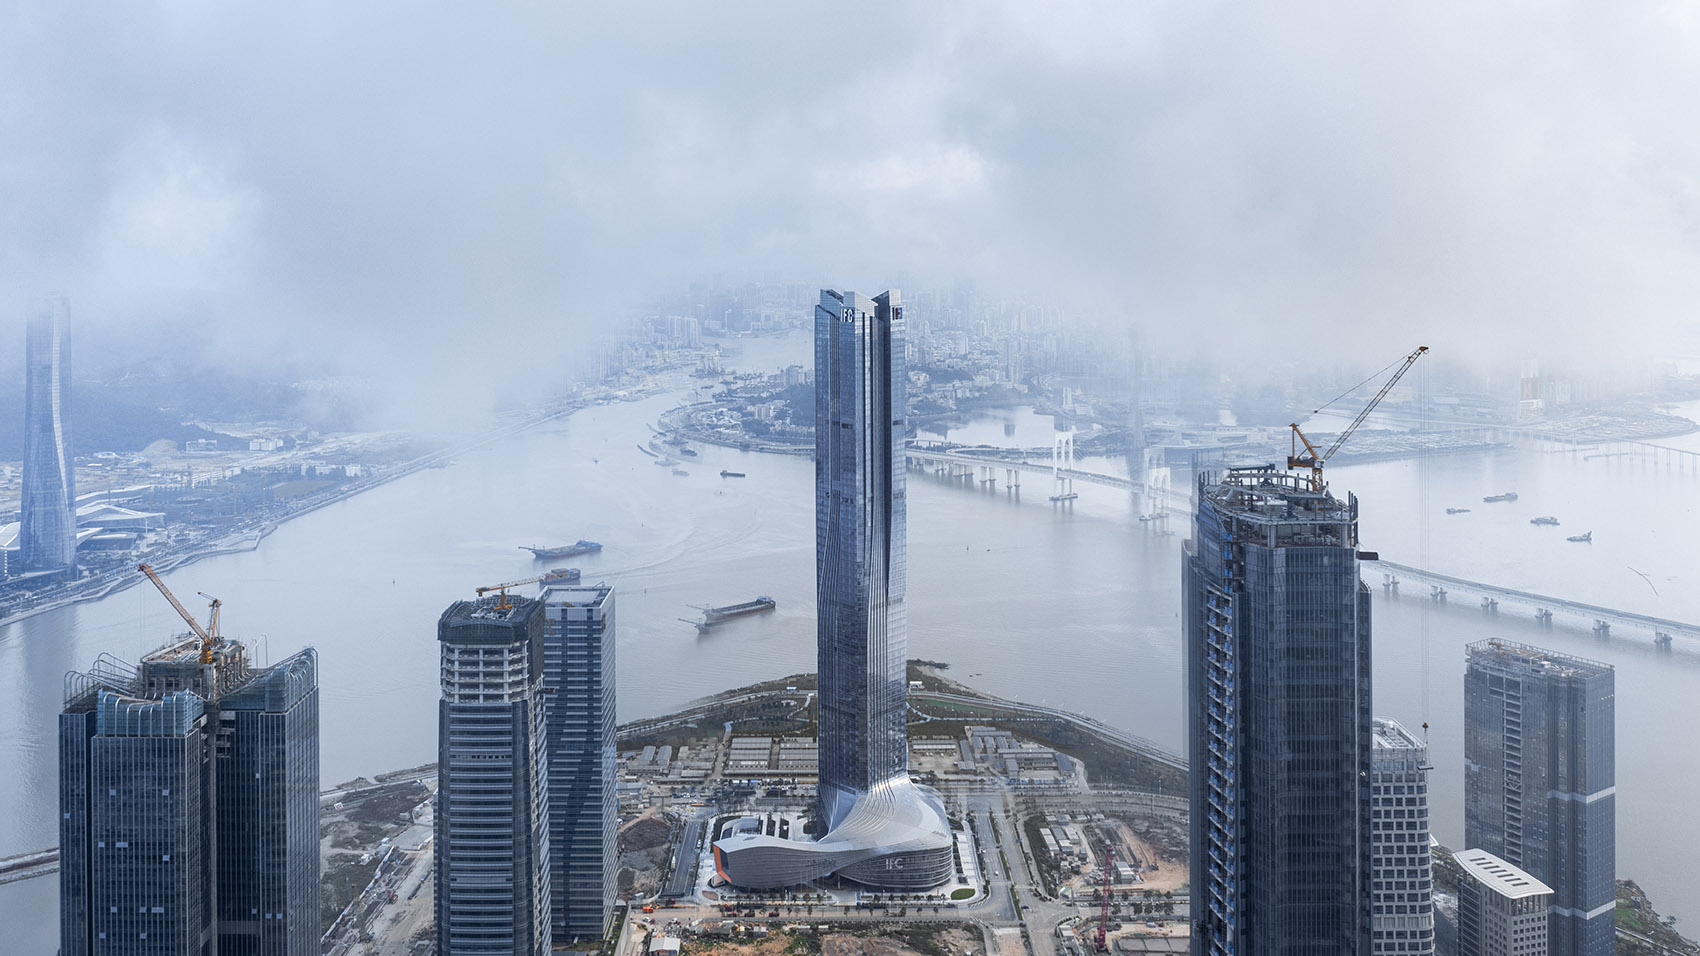 横琴国际金融中心，珠海/珠澳第一高楼，以蛟龙出海打造中国新力量-61